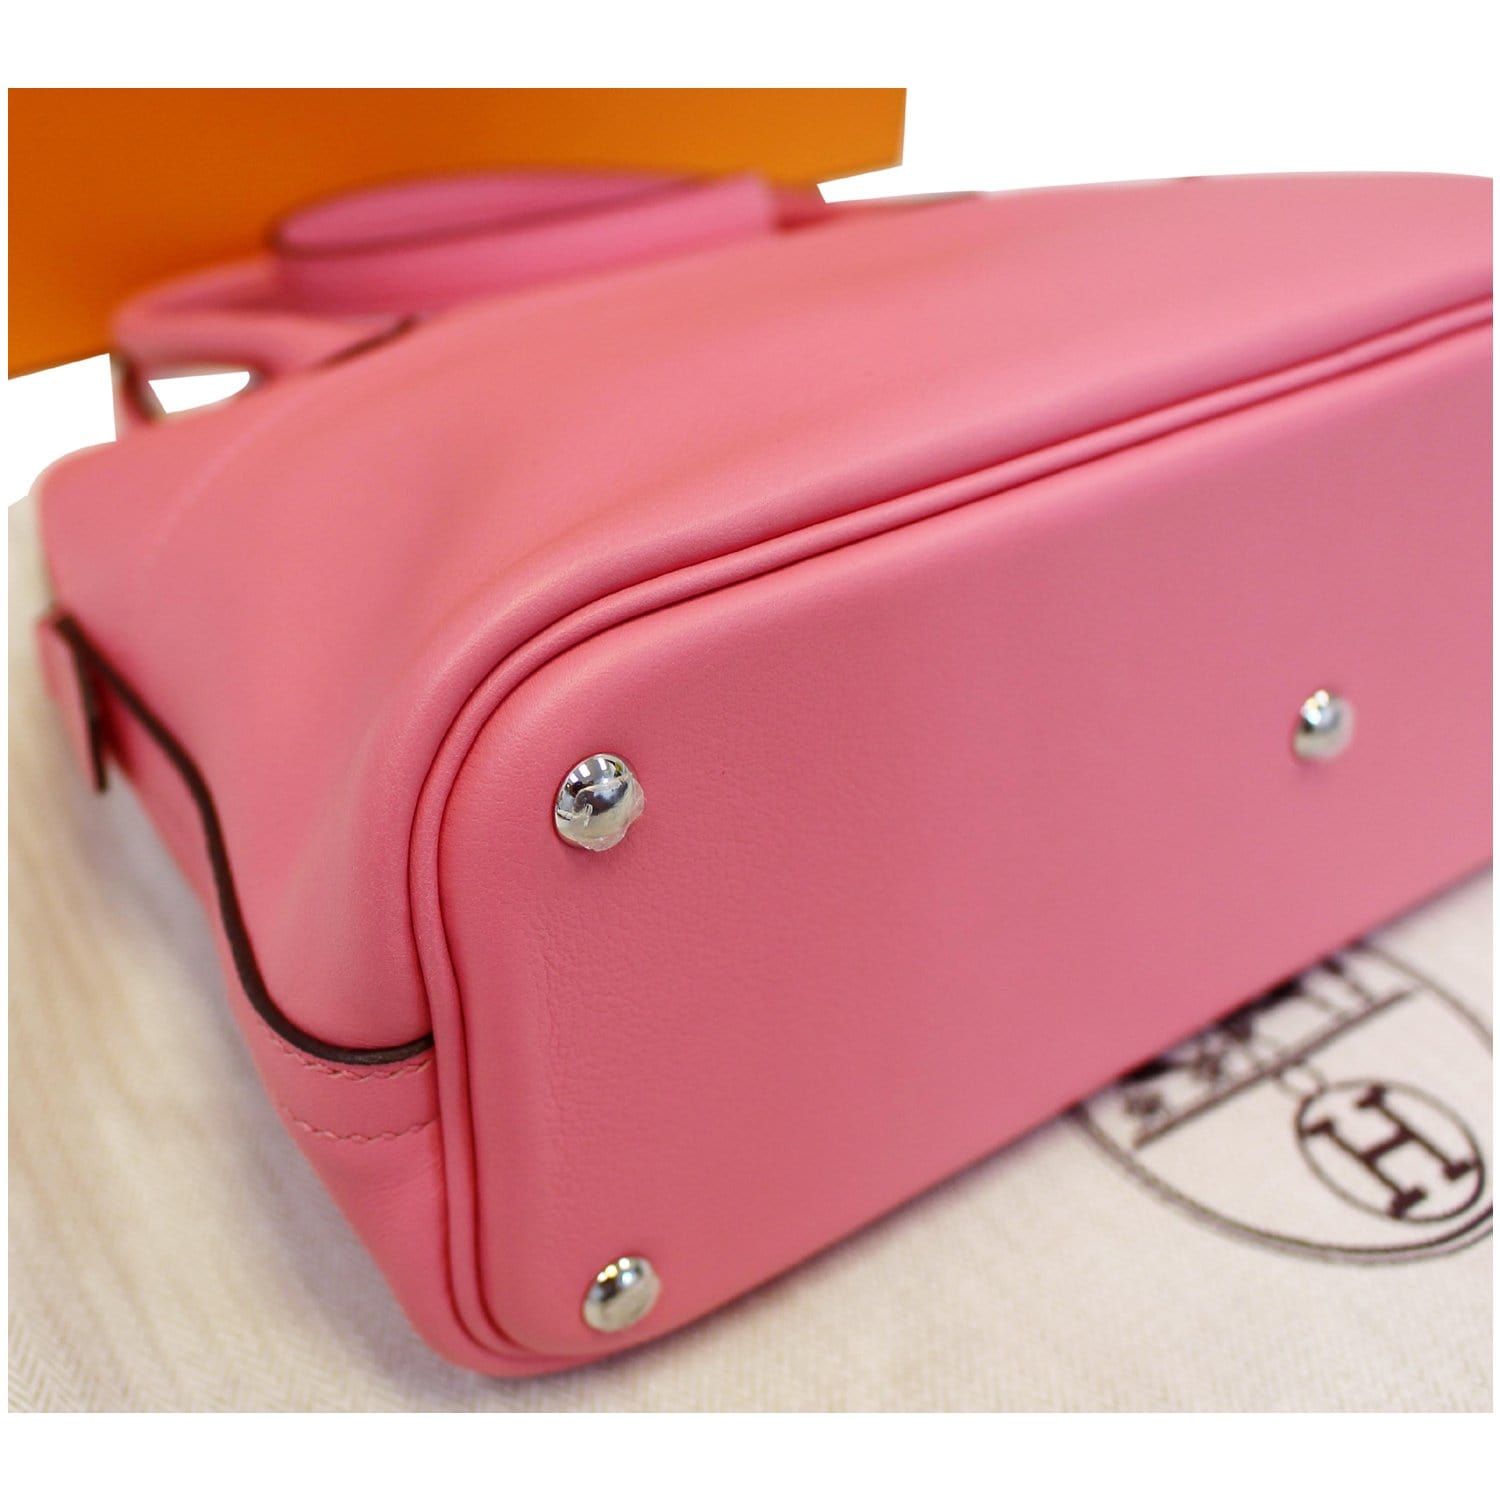 Authentic Hermes Pink Bolide 27 Epsom Leather Handbag/Shoulder Bag